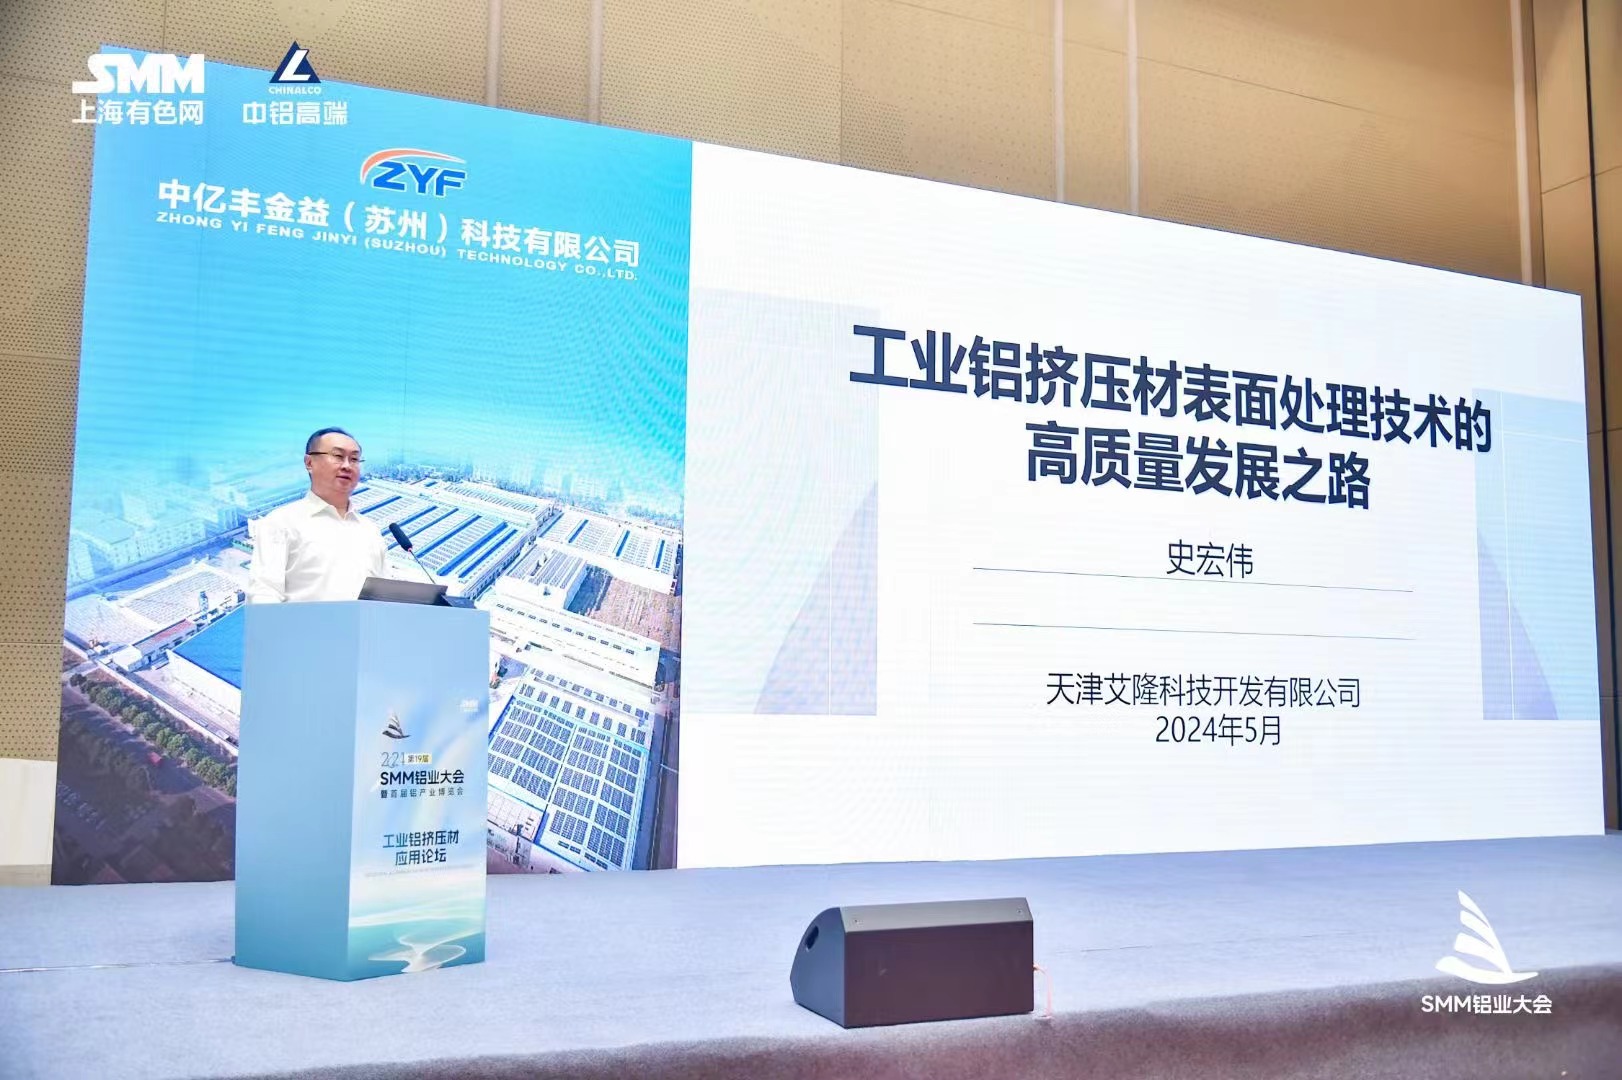 天津艾隆应邀出席2024年第十九届SMM铝业大会并作主题演讲